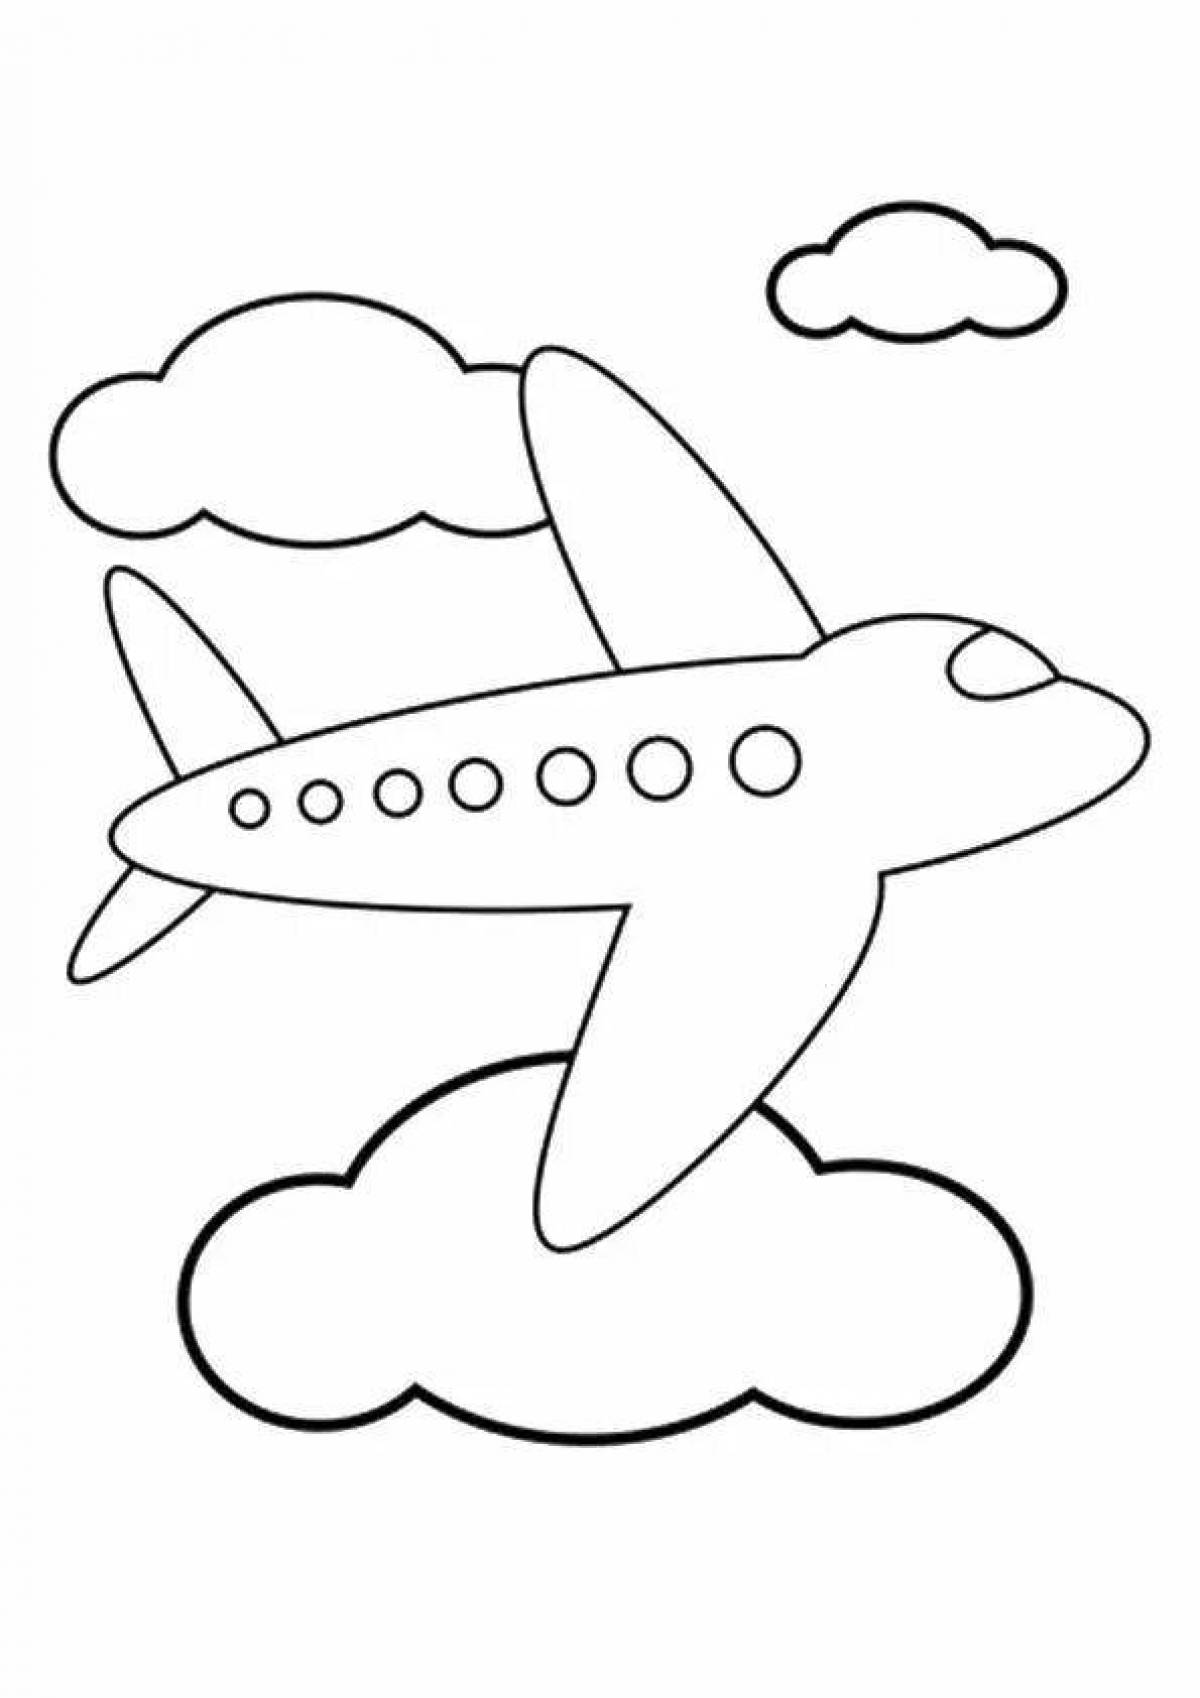 Привлекательная страница раскраски с рисунком самолета